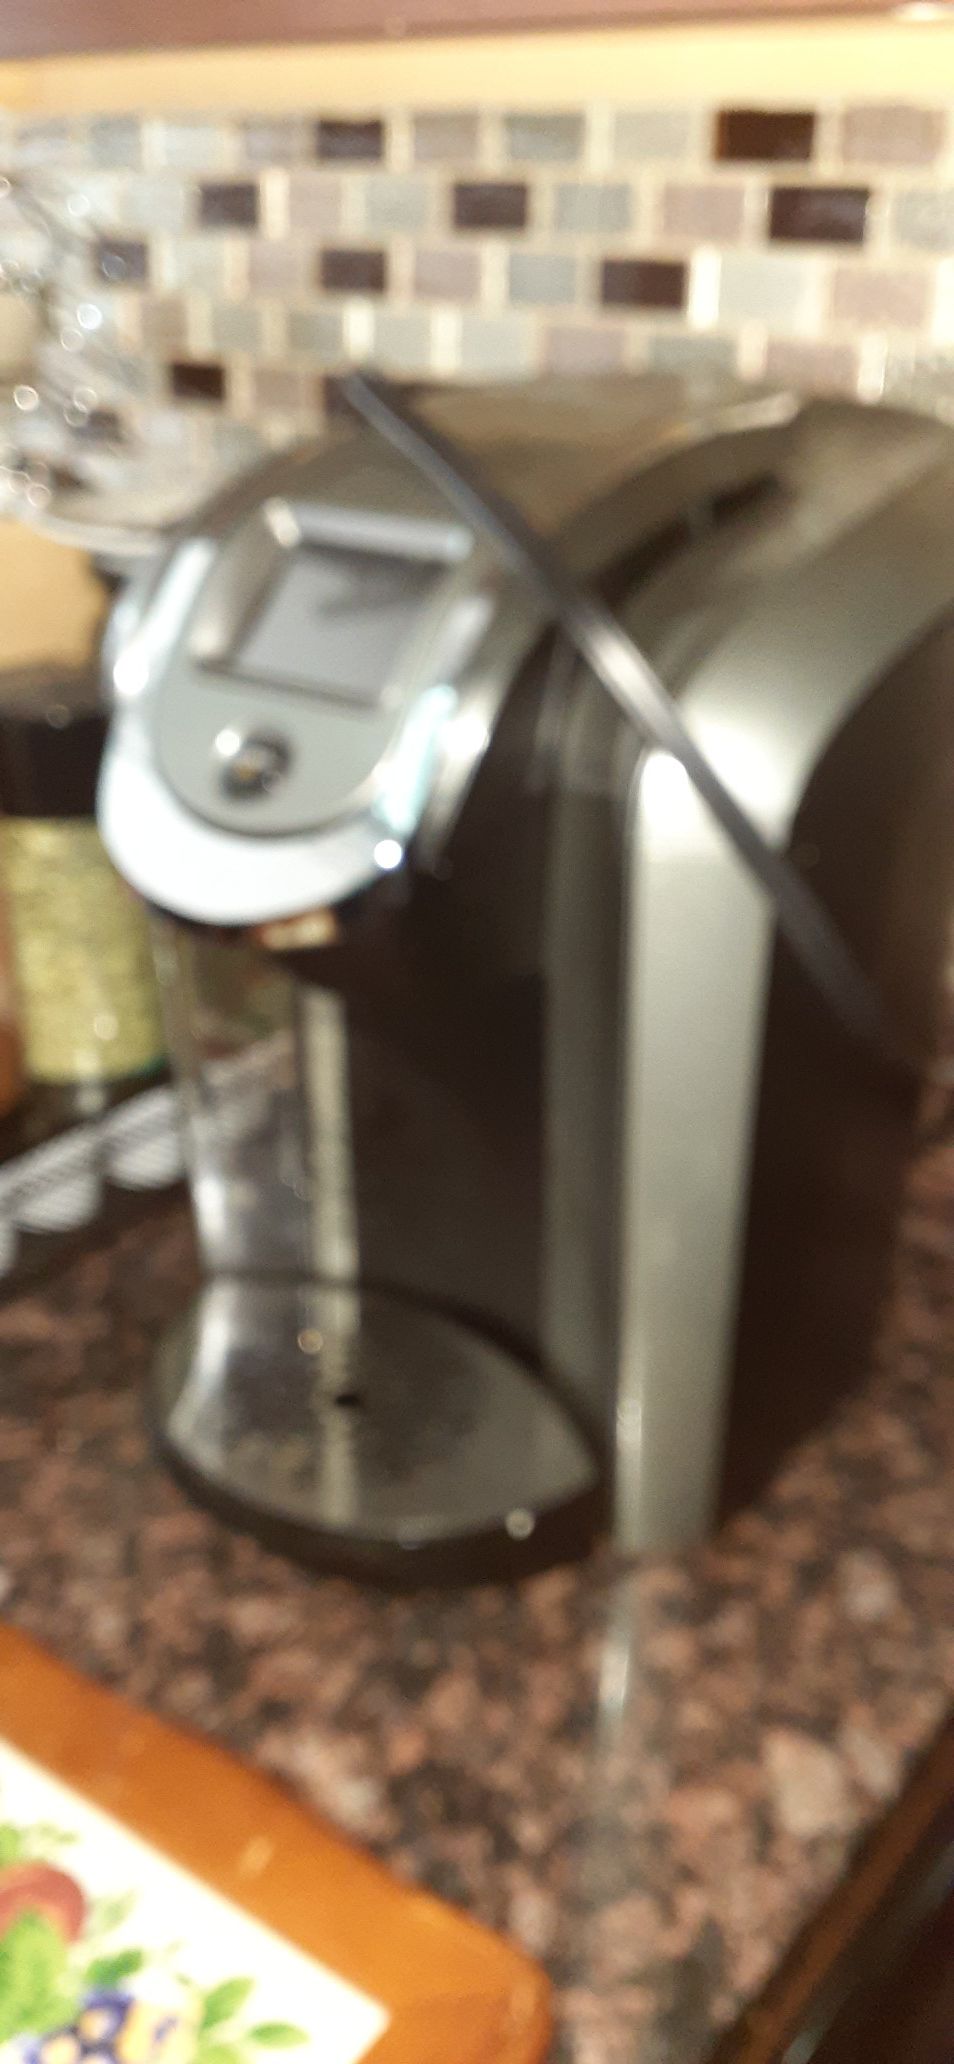 Keurig electric coffee maker